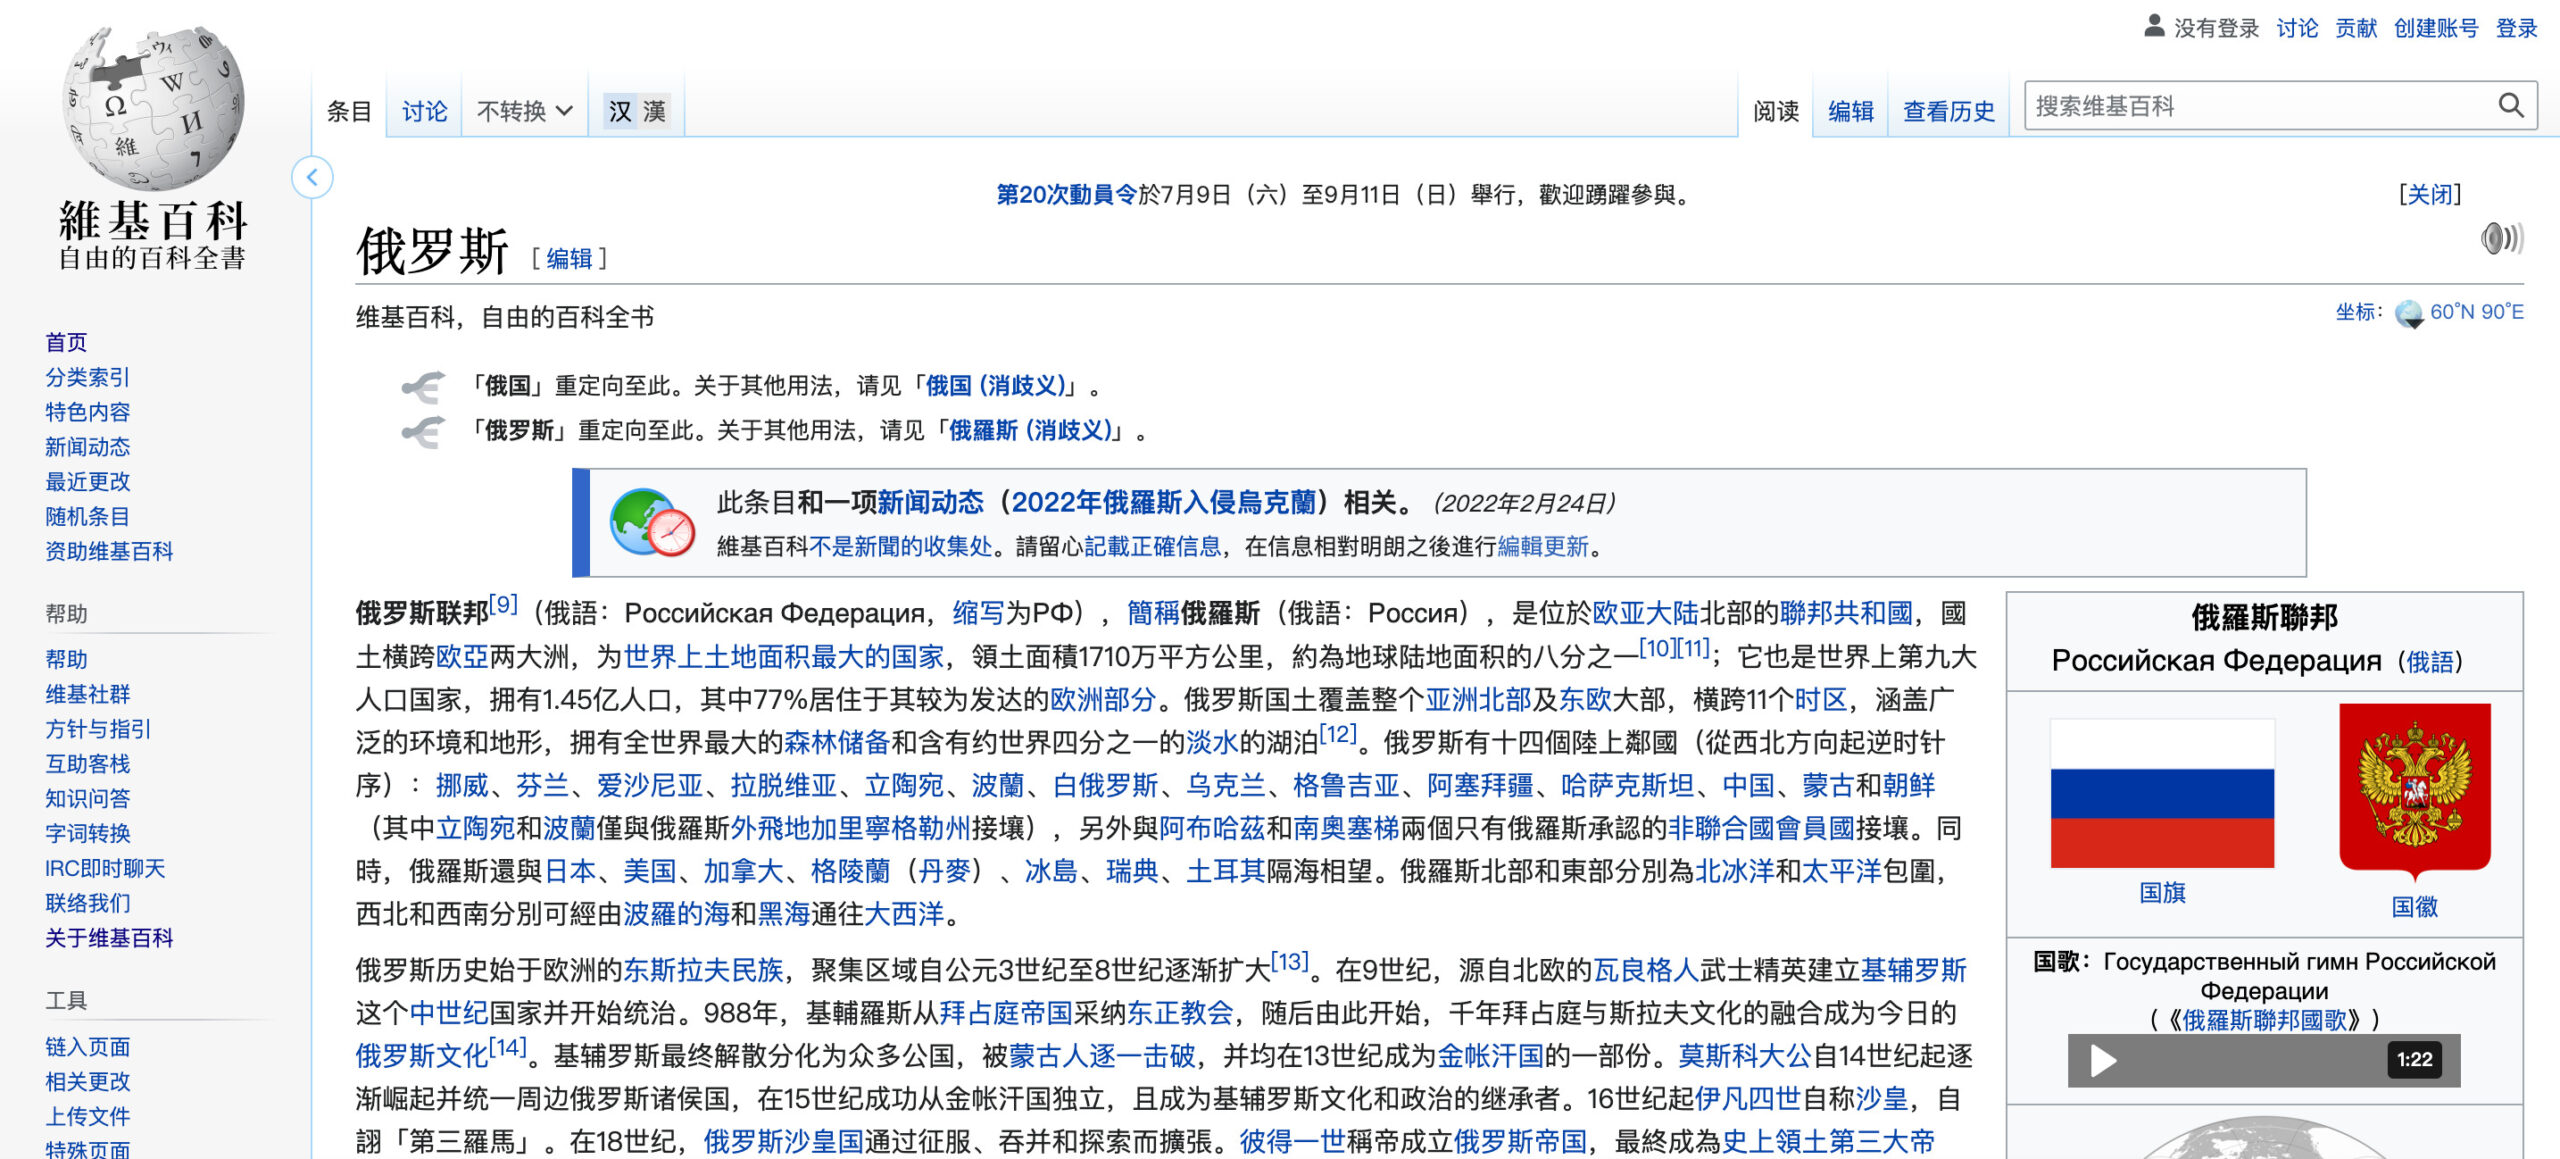 Chinois - Wikipedia